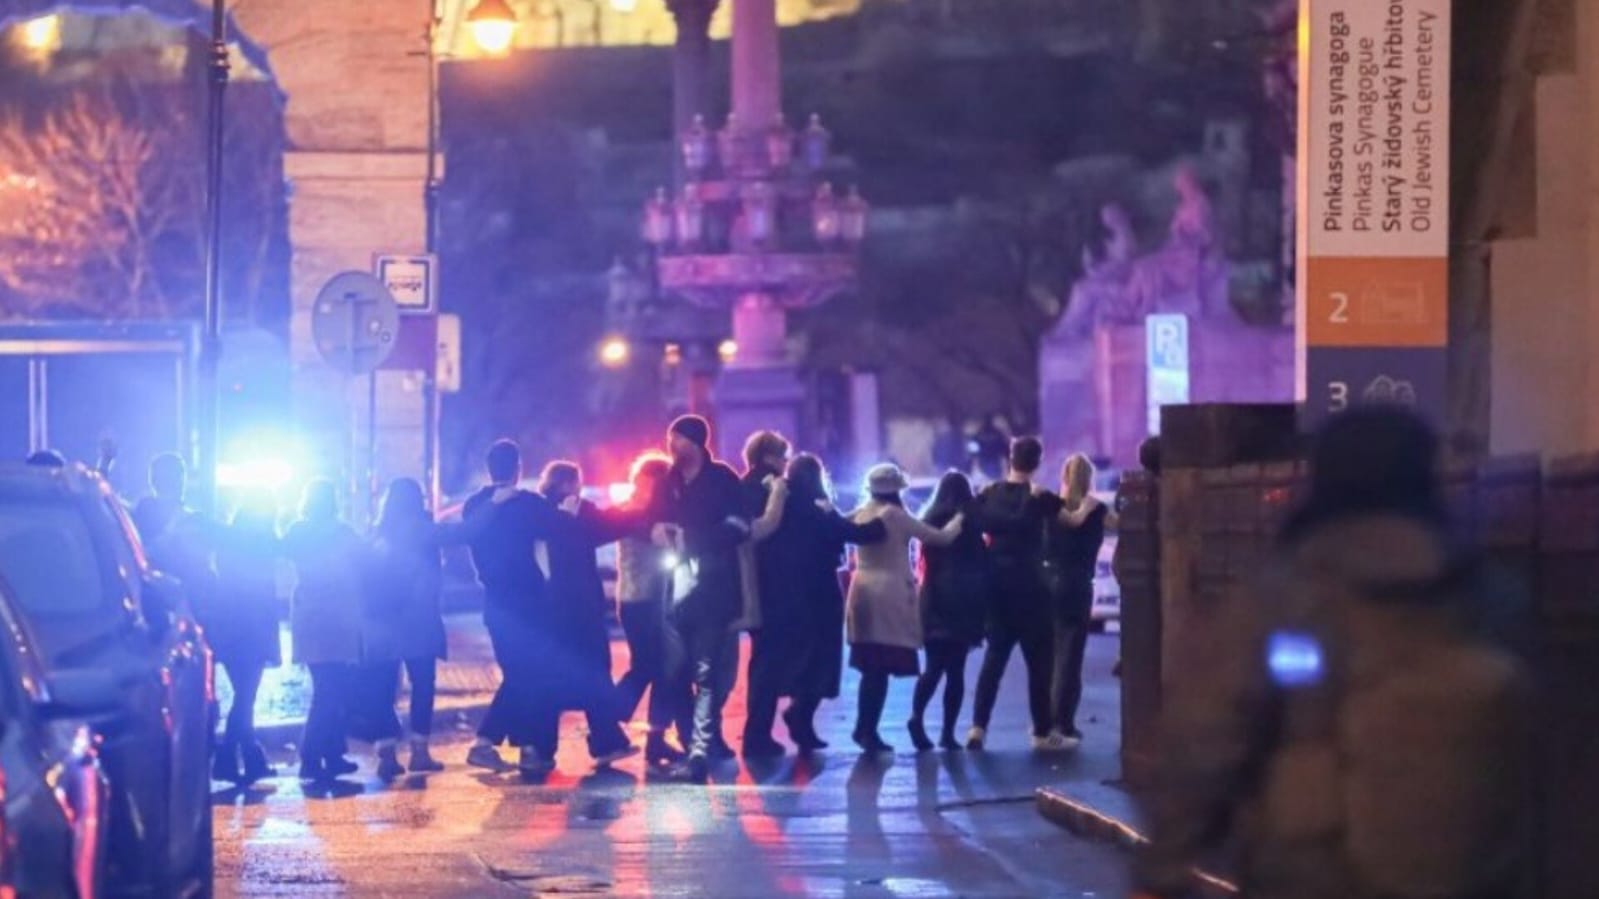 Kozak vrau 15 persona në Pragë, studenti shqiptar: Të gjithë po e ndiqnin ngjarjen ‘live’